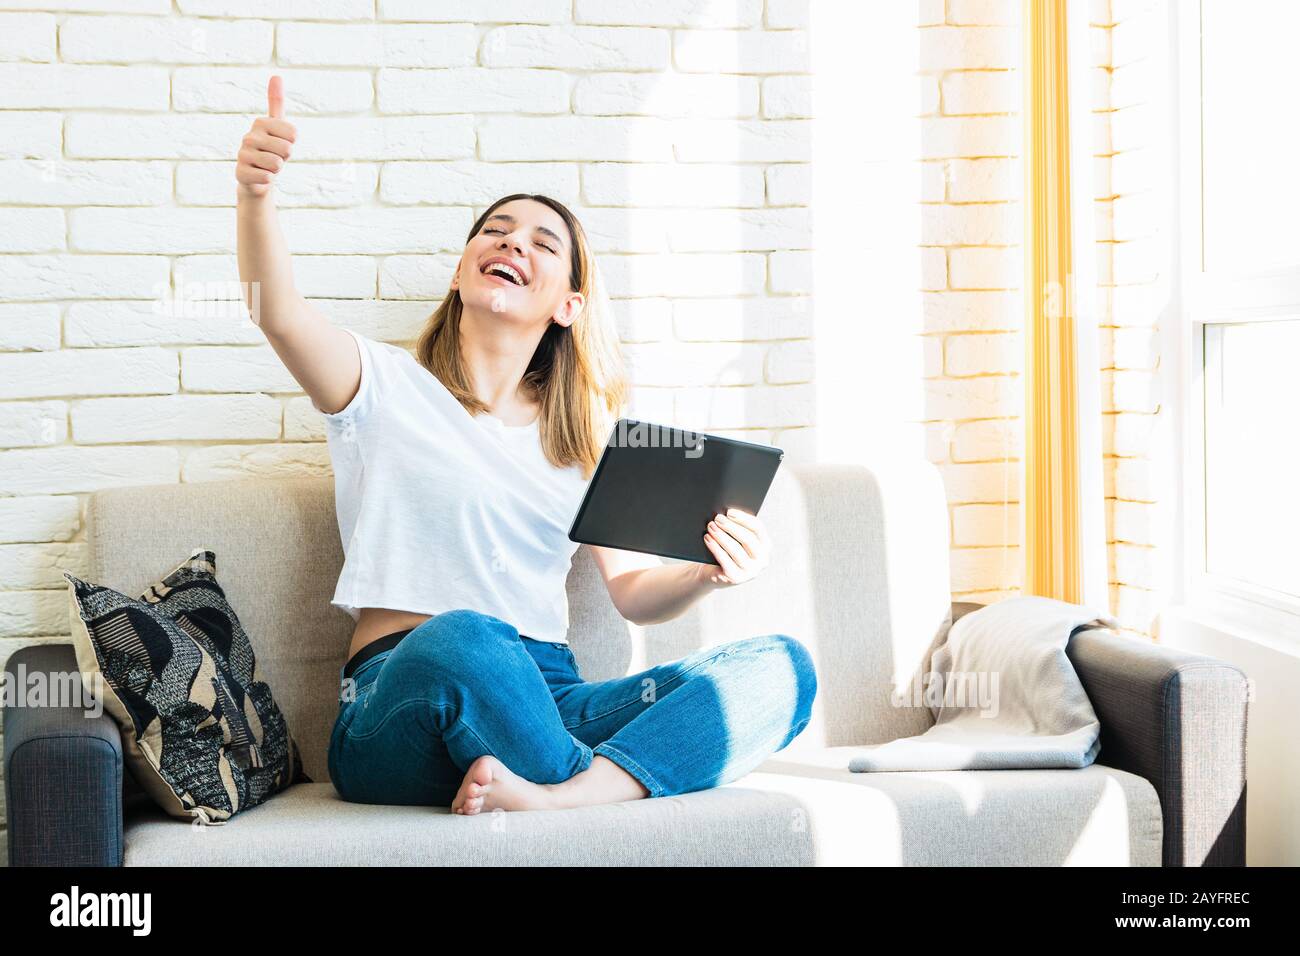 jeune femme gaie avec un beau sourire à la maison sur un canapé, en utilisant une tablette a gagné jouer en ligne Banque D'Images